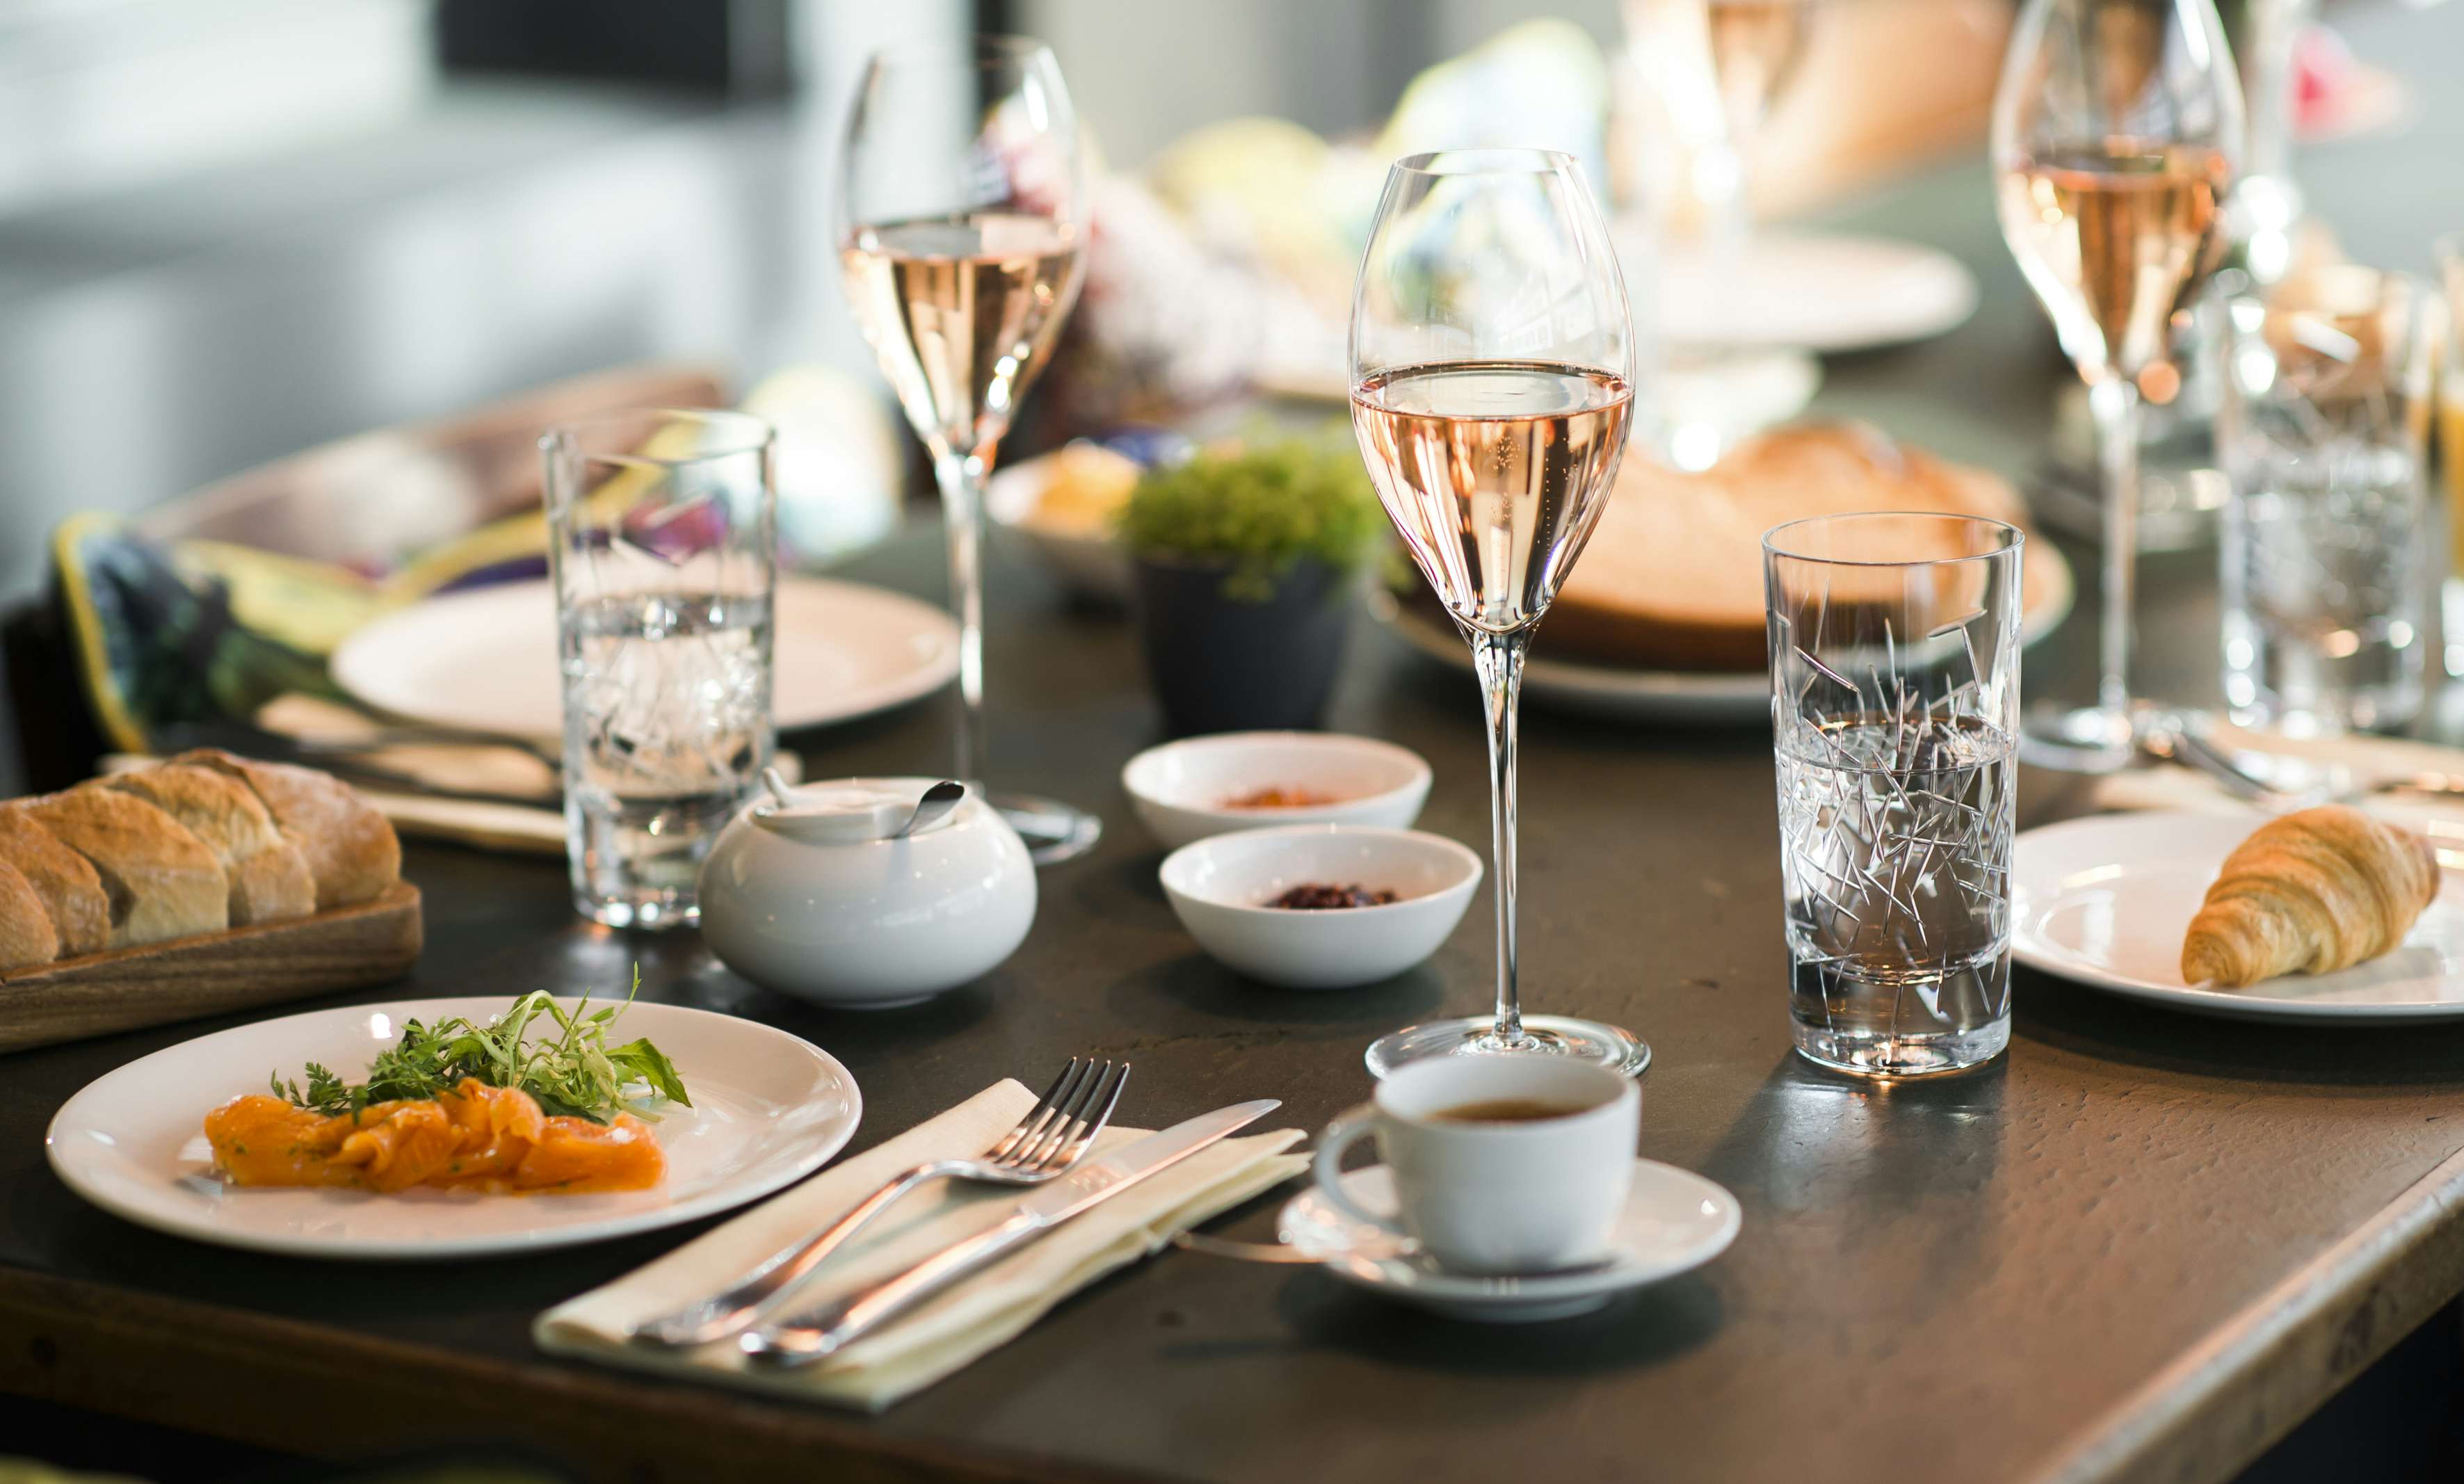 Brasserie Colette Berlin - gedeckter Tisch mit französischen Gerichten, Wein und Kaffee.